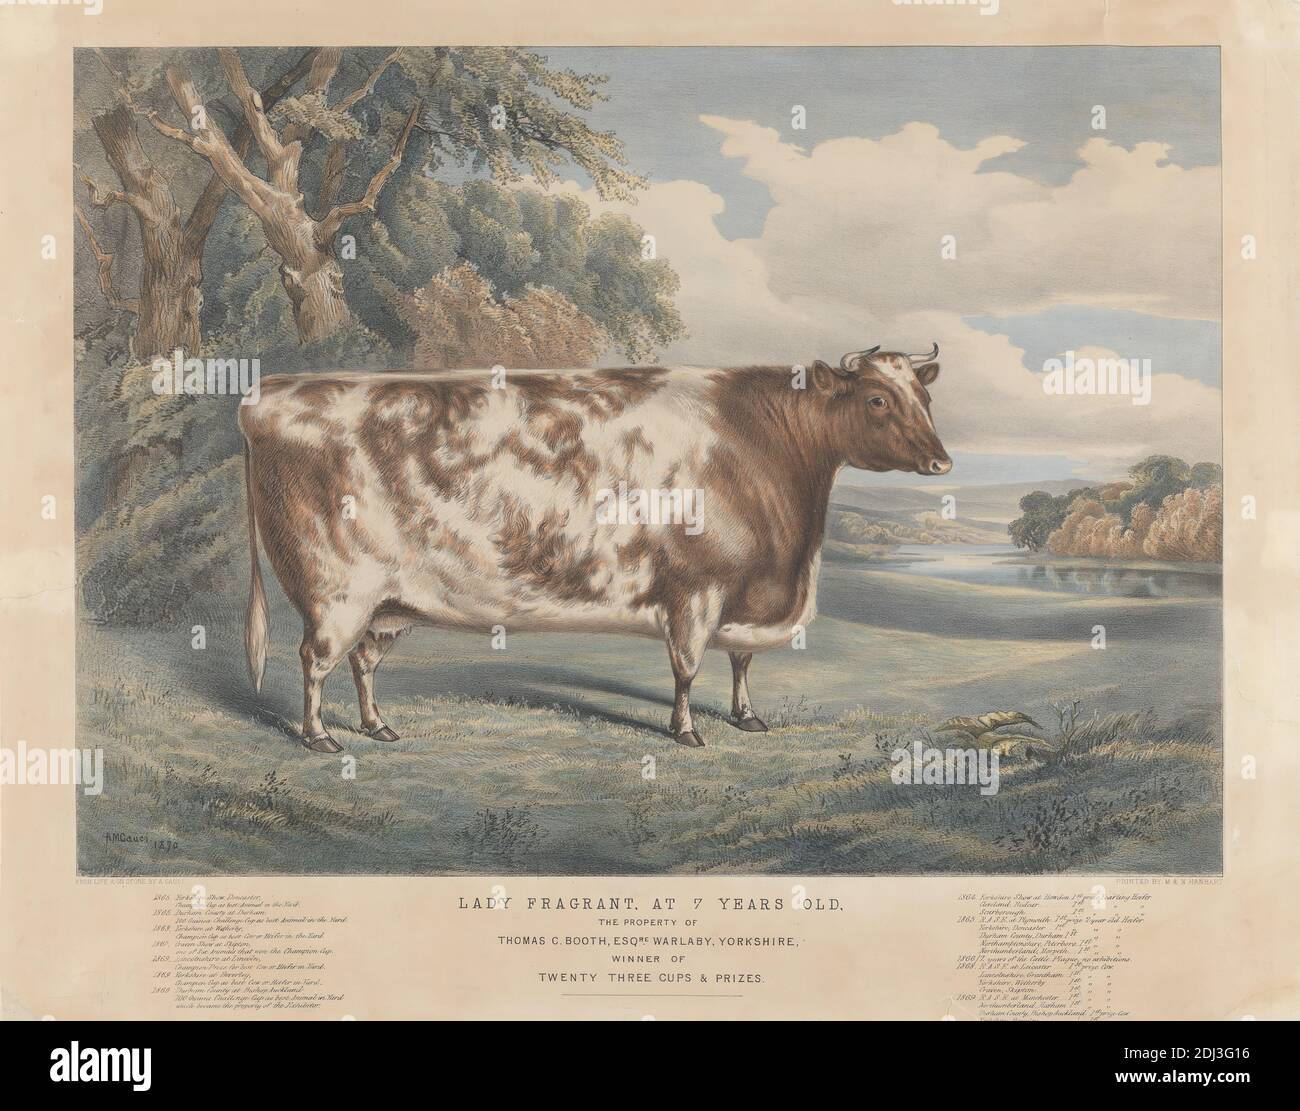 Lady odorant, à 7 ans, imprimé par A. M. Gauci, fl.1848–1869, après A. M. Gauci, fl.1848–1869, 1870, lithographe à la main sur papier épais, modérément texturé, crème, feuille: 17 3/4 x 22 1/2 pouces (45.1 x 57.2 cm) et image: 14 1/4 x 19 3/4 pouces (36.2 x 50.2 cm), agronomie, art animal, vache, élevage, élevage, obésité, science Banque D'Images